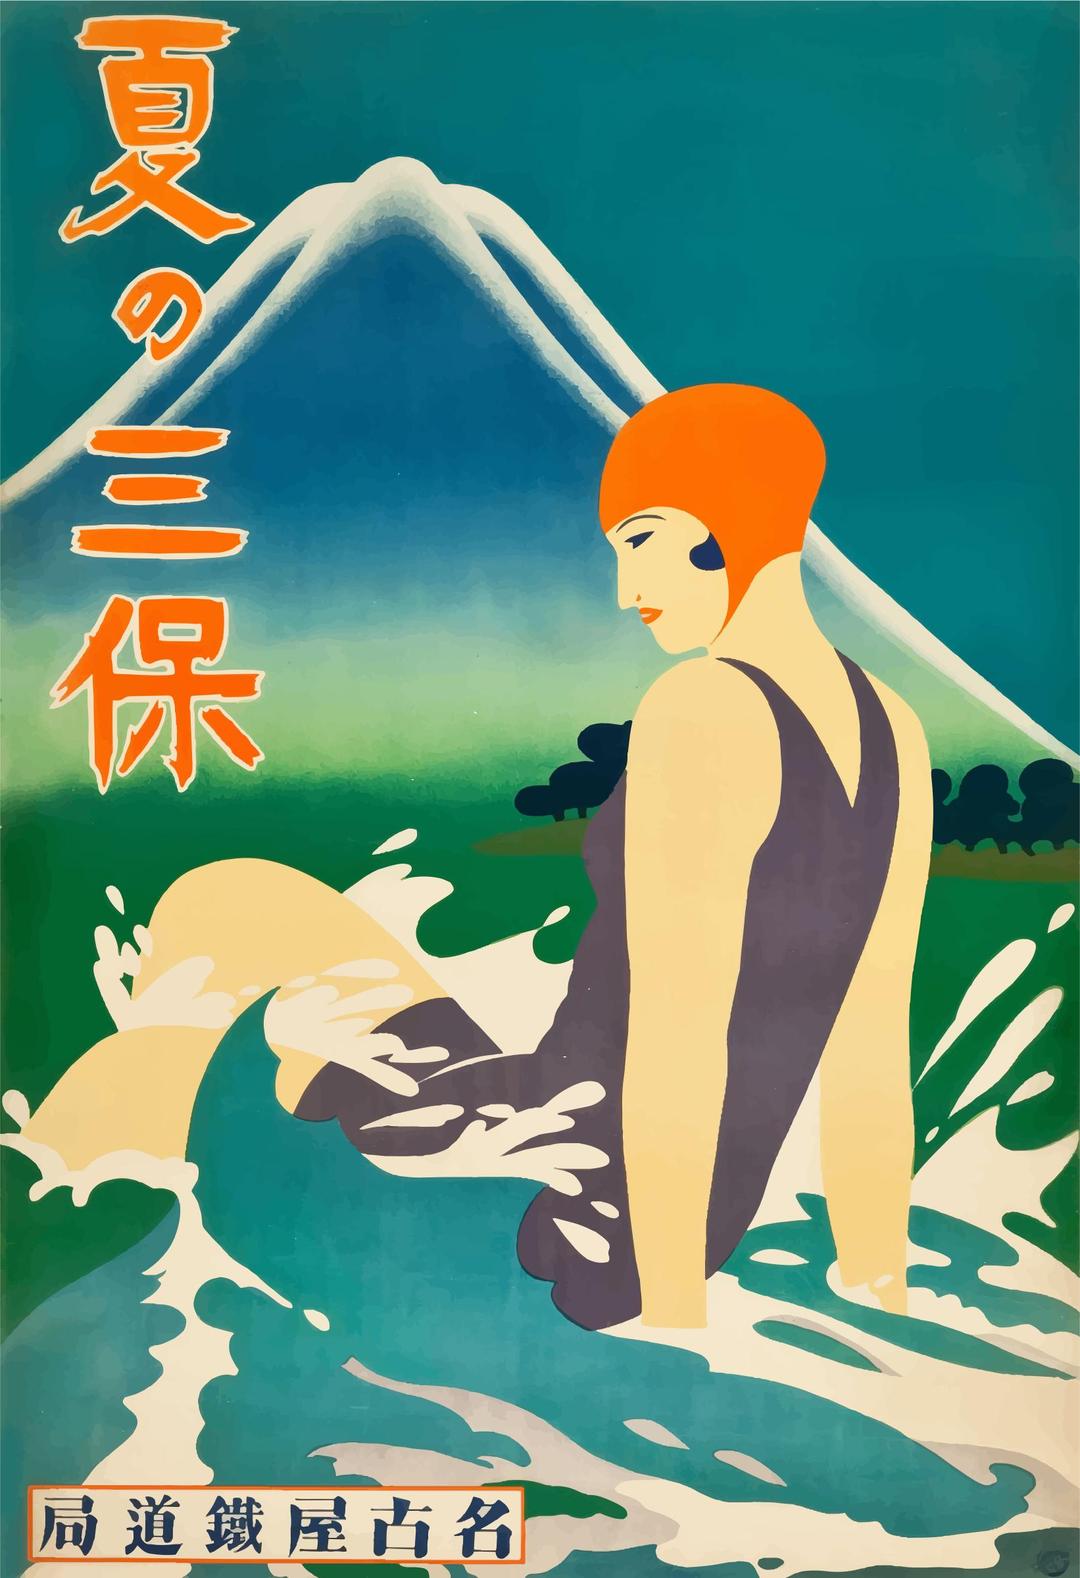 Vintage Travel Poster 1930s Japan 2 png transparent